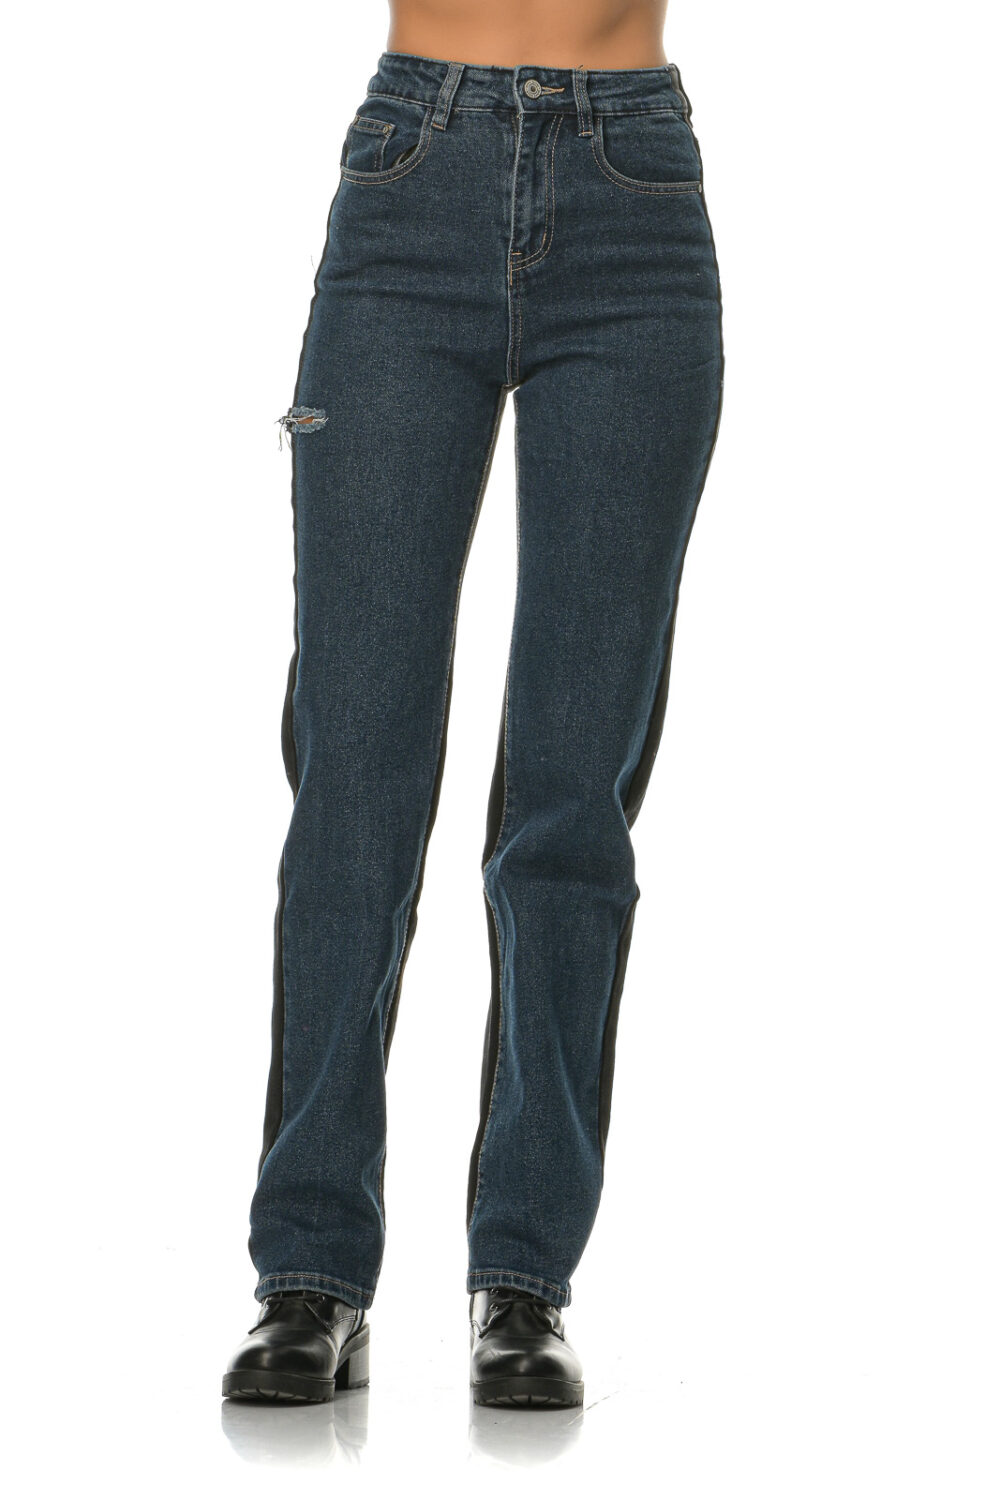 Διπλό ψηλόμεσο ελαστικό τζιν παντελόνι(μπροστά μπλε χρώμα και πίσω μαύρο)